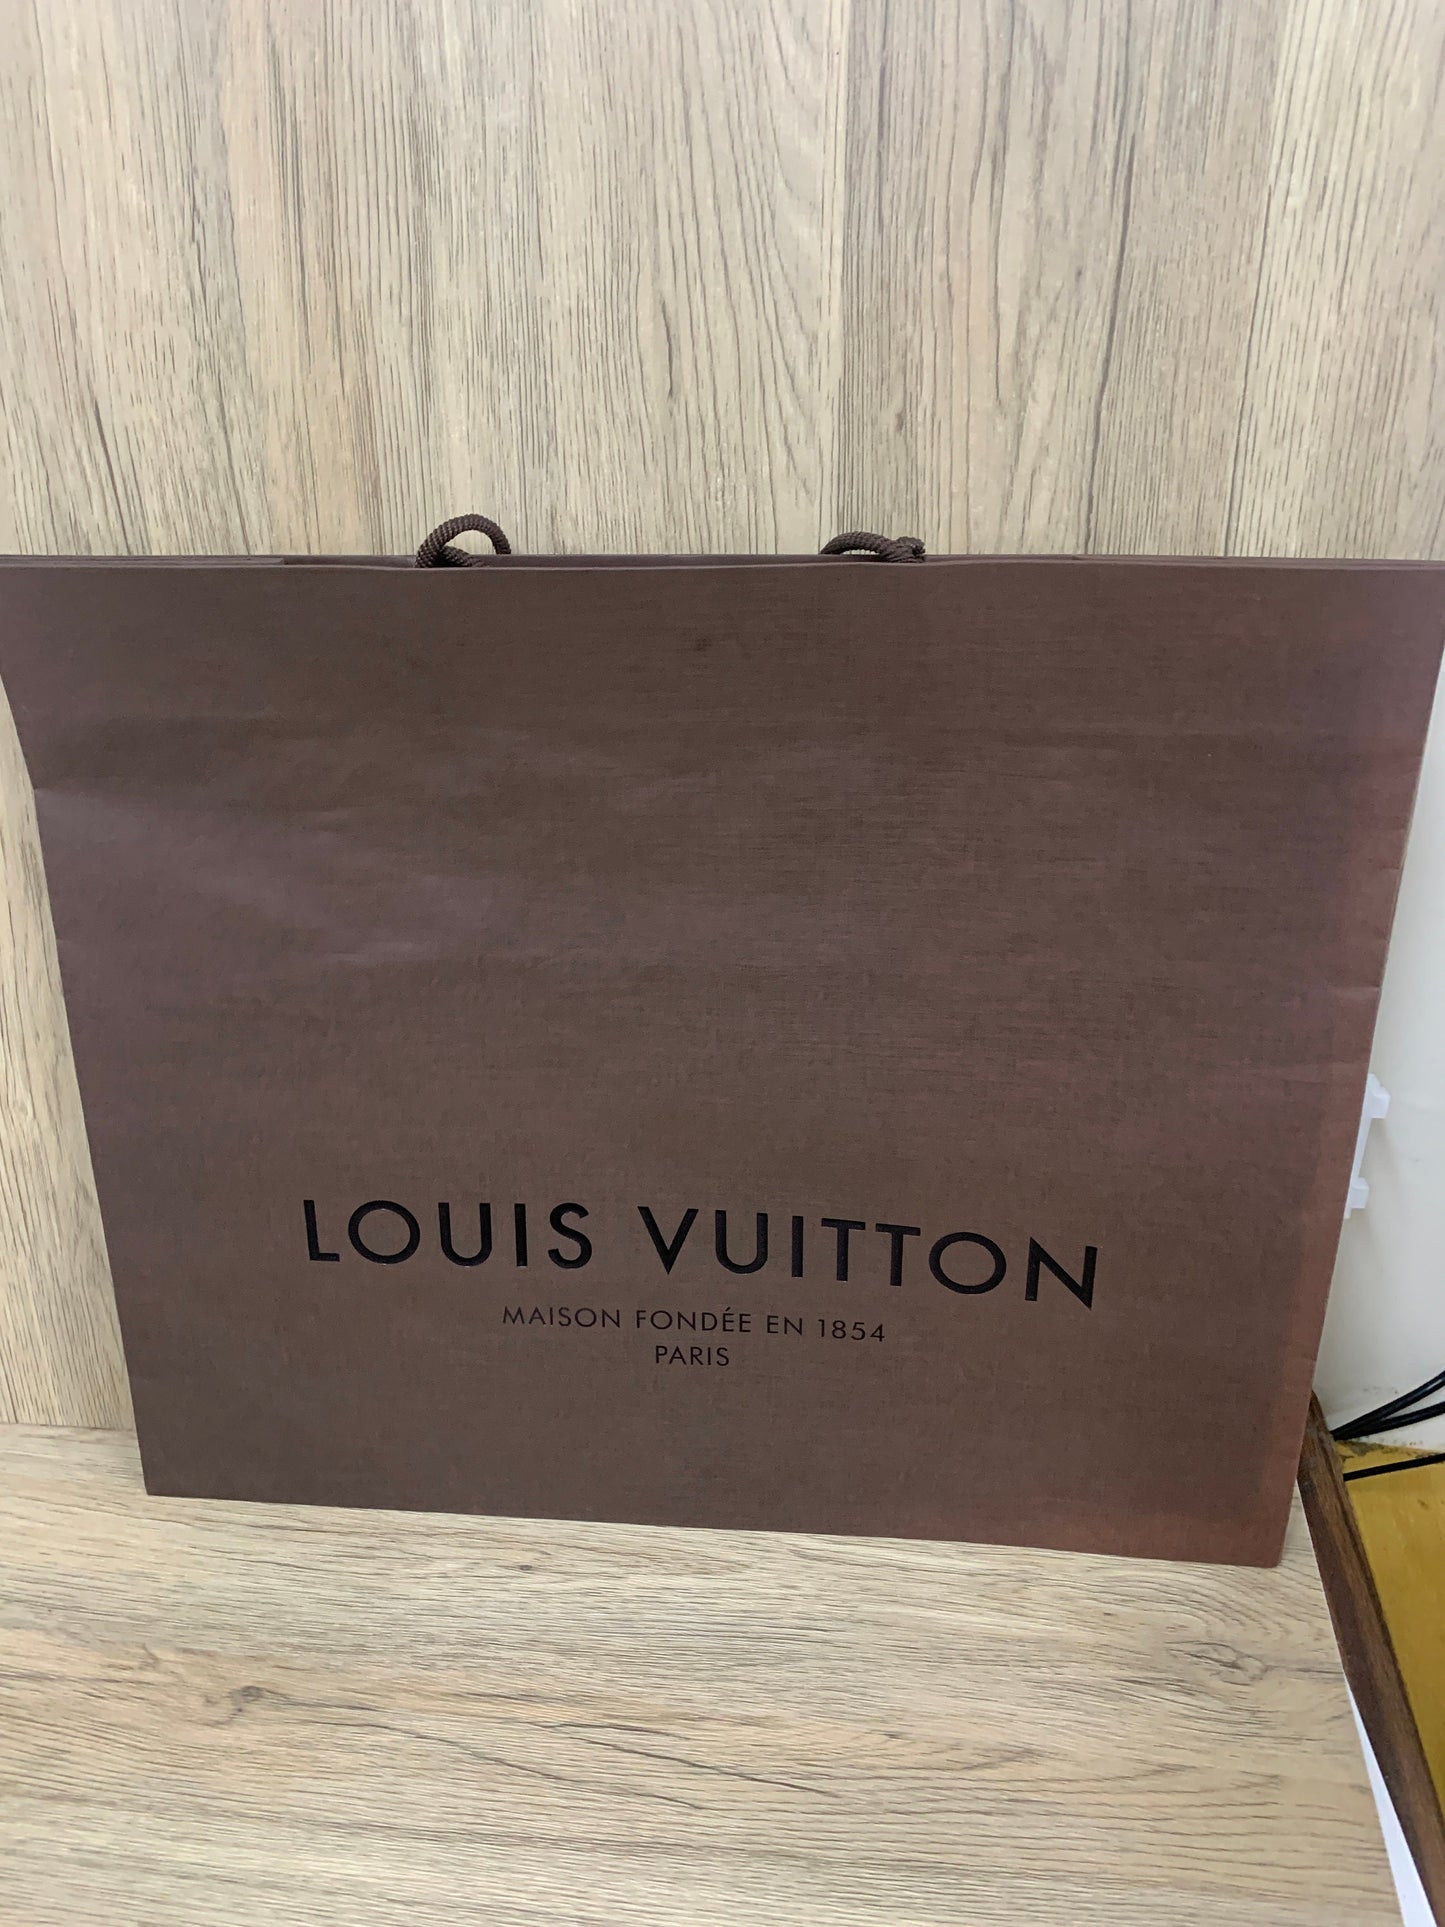 Vintage Louis Vuitton Box Large  Vintage louis vuitton, Vuitton box,  Vintage